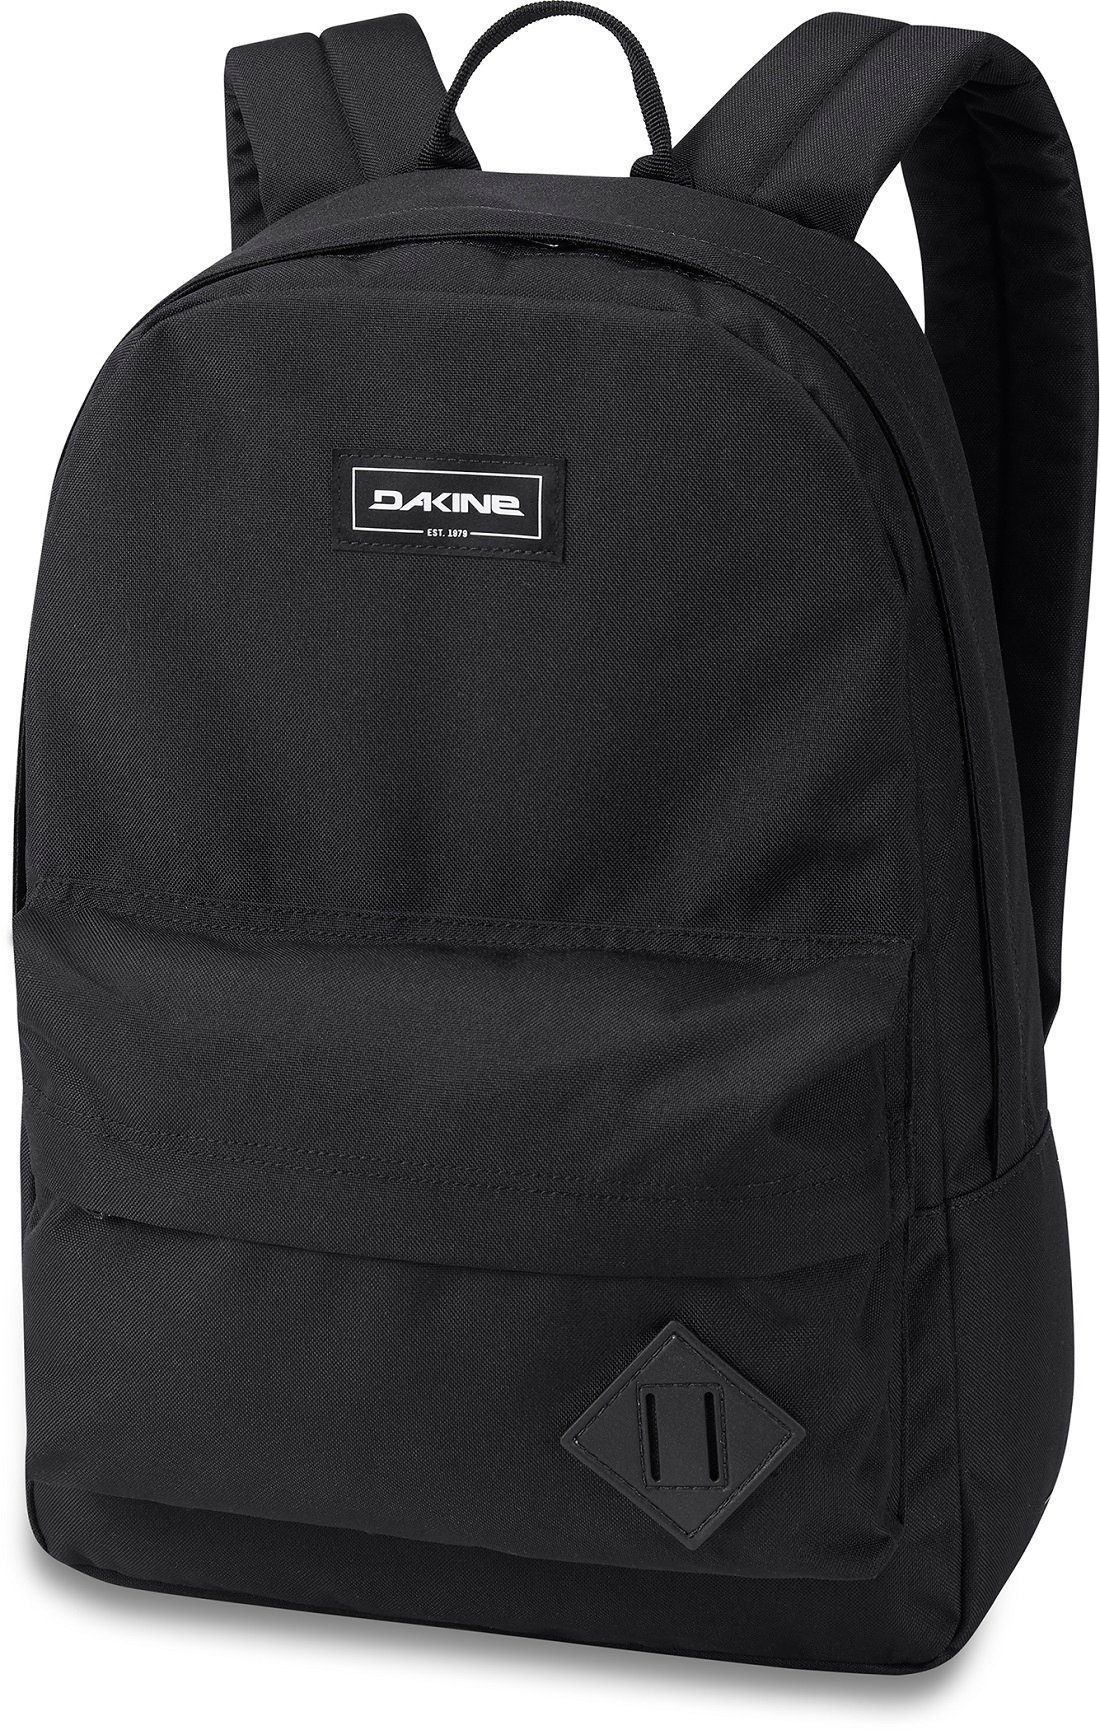 Pack leicht Rucksack mit Freizeitrucksack Laptopfach black Dakine 21L 365 15",